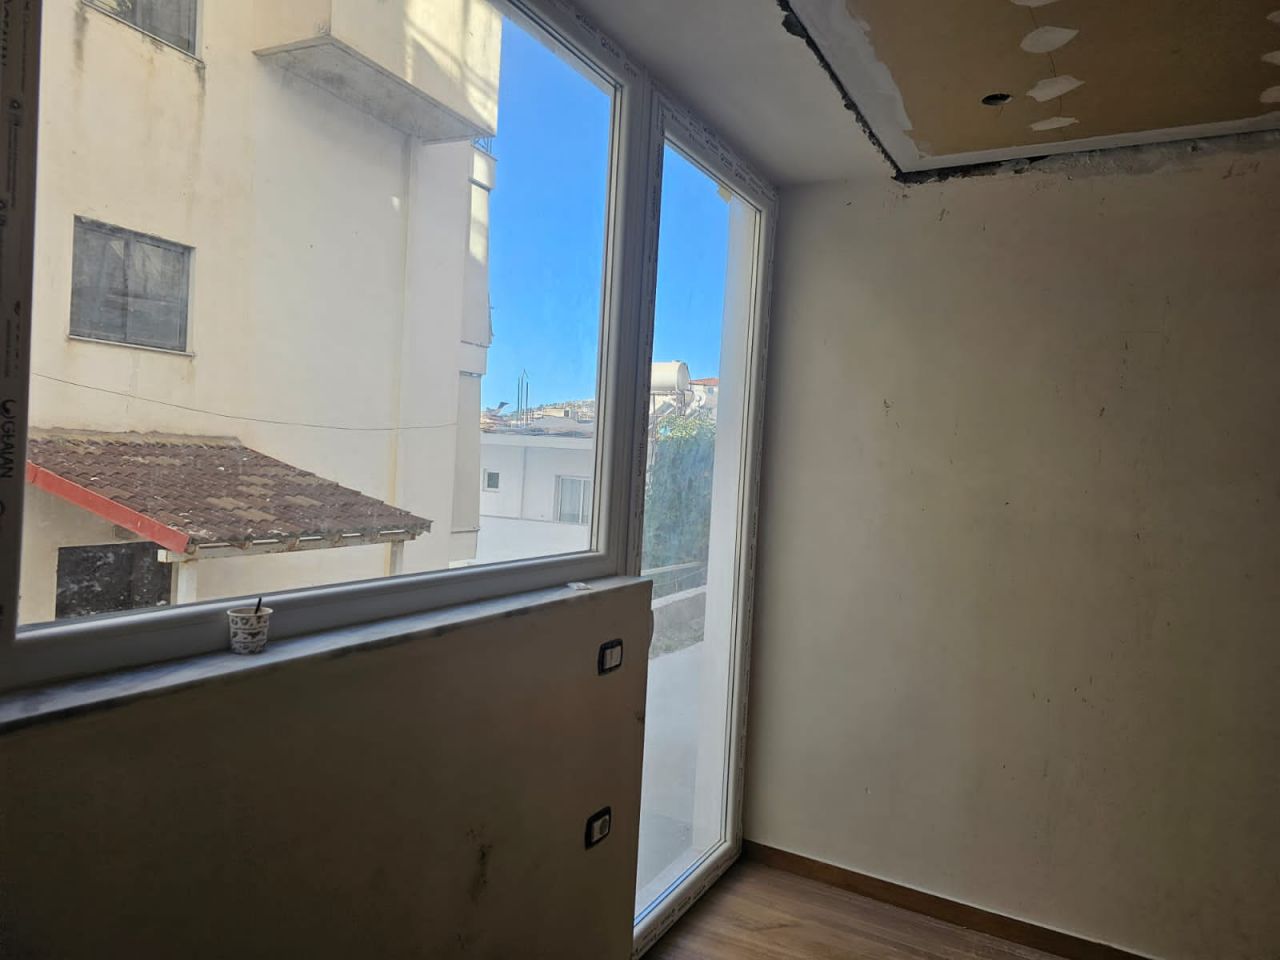 Dwupoziomowy Apartament Na Sprzedaż W Sarandzie W Albanii, Położony W Dobrej Okolicy W Pobliżu Plaży